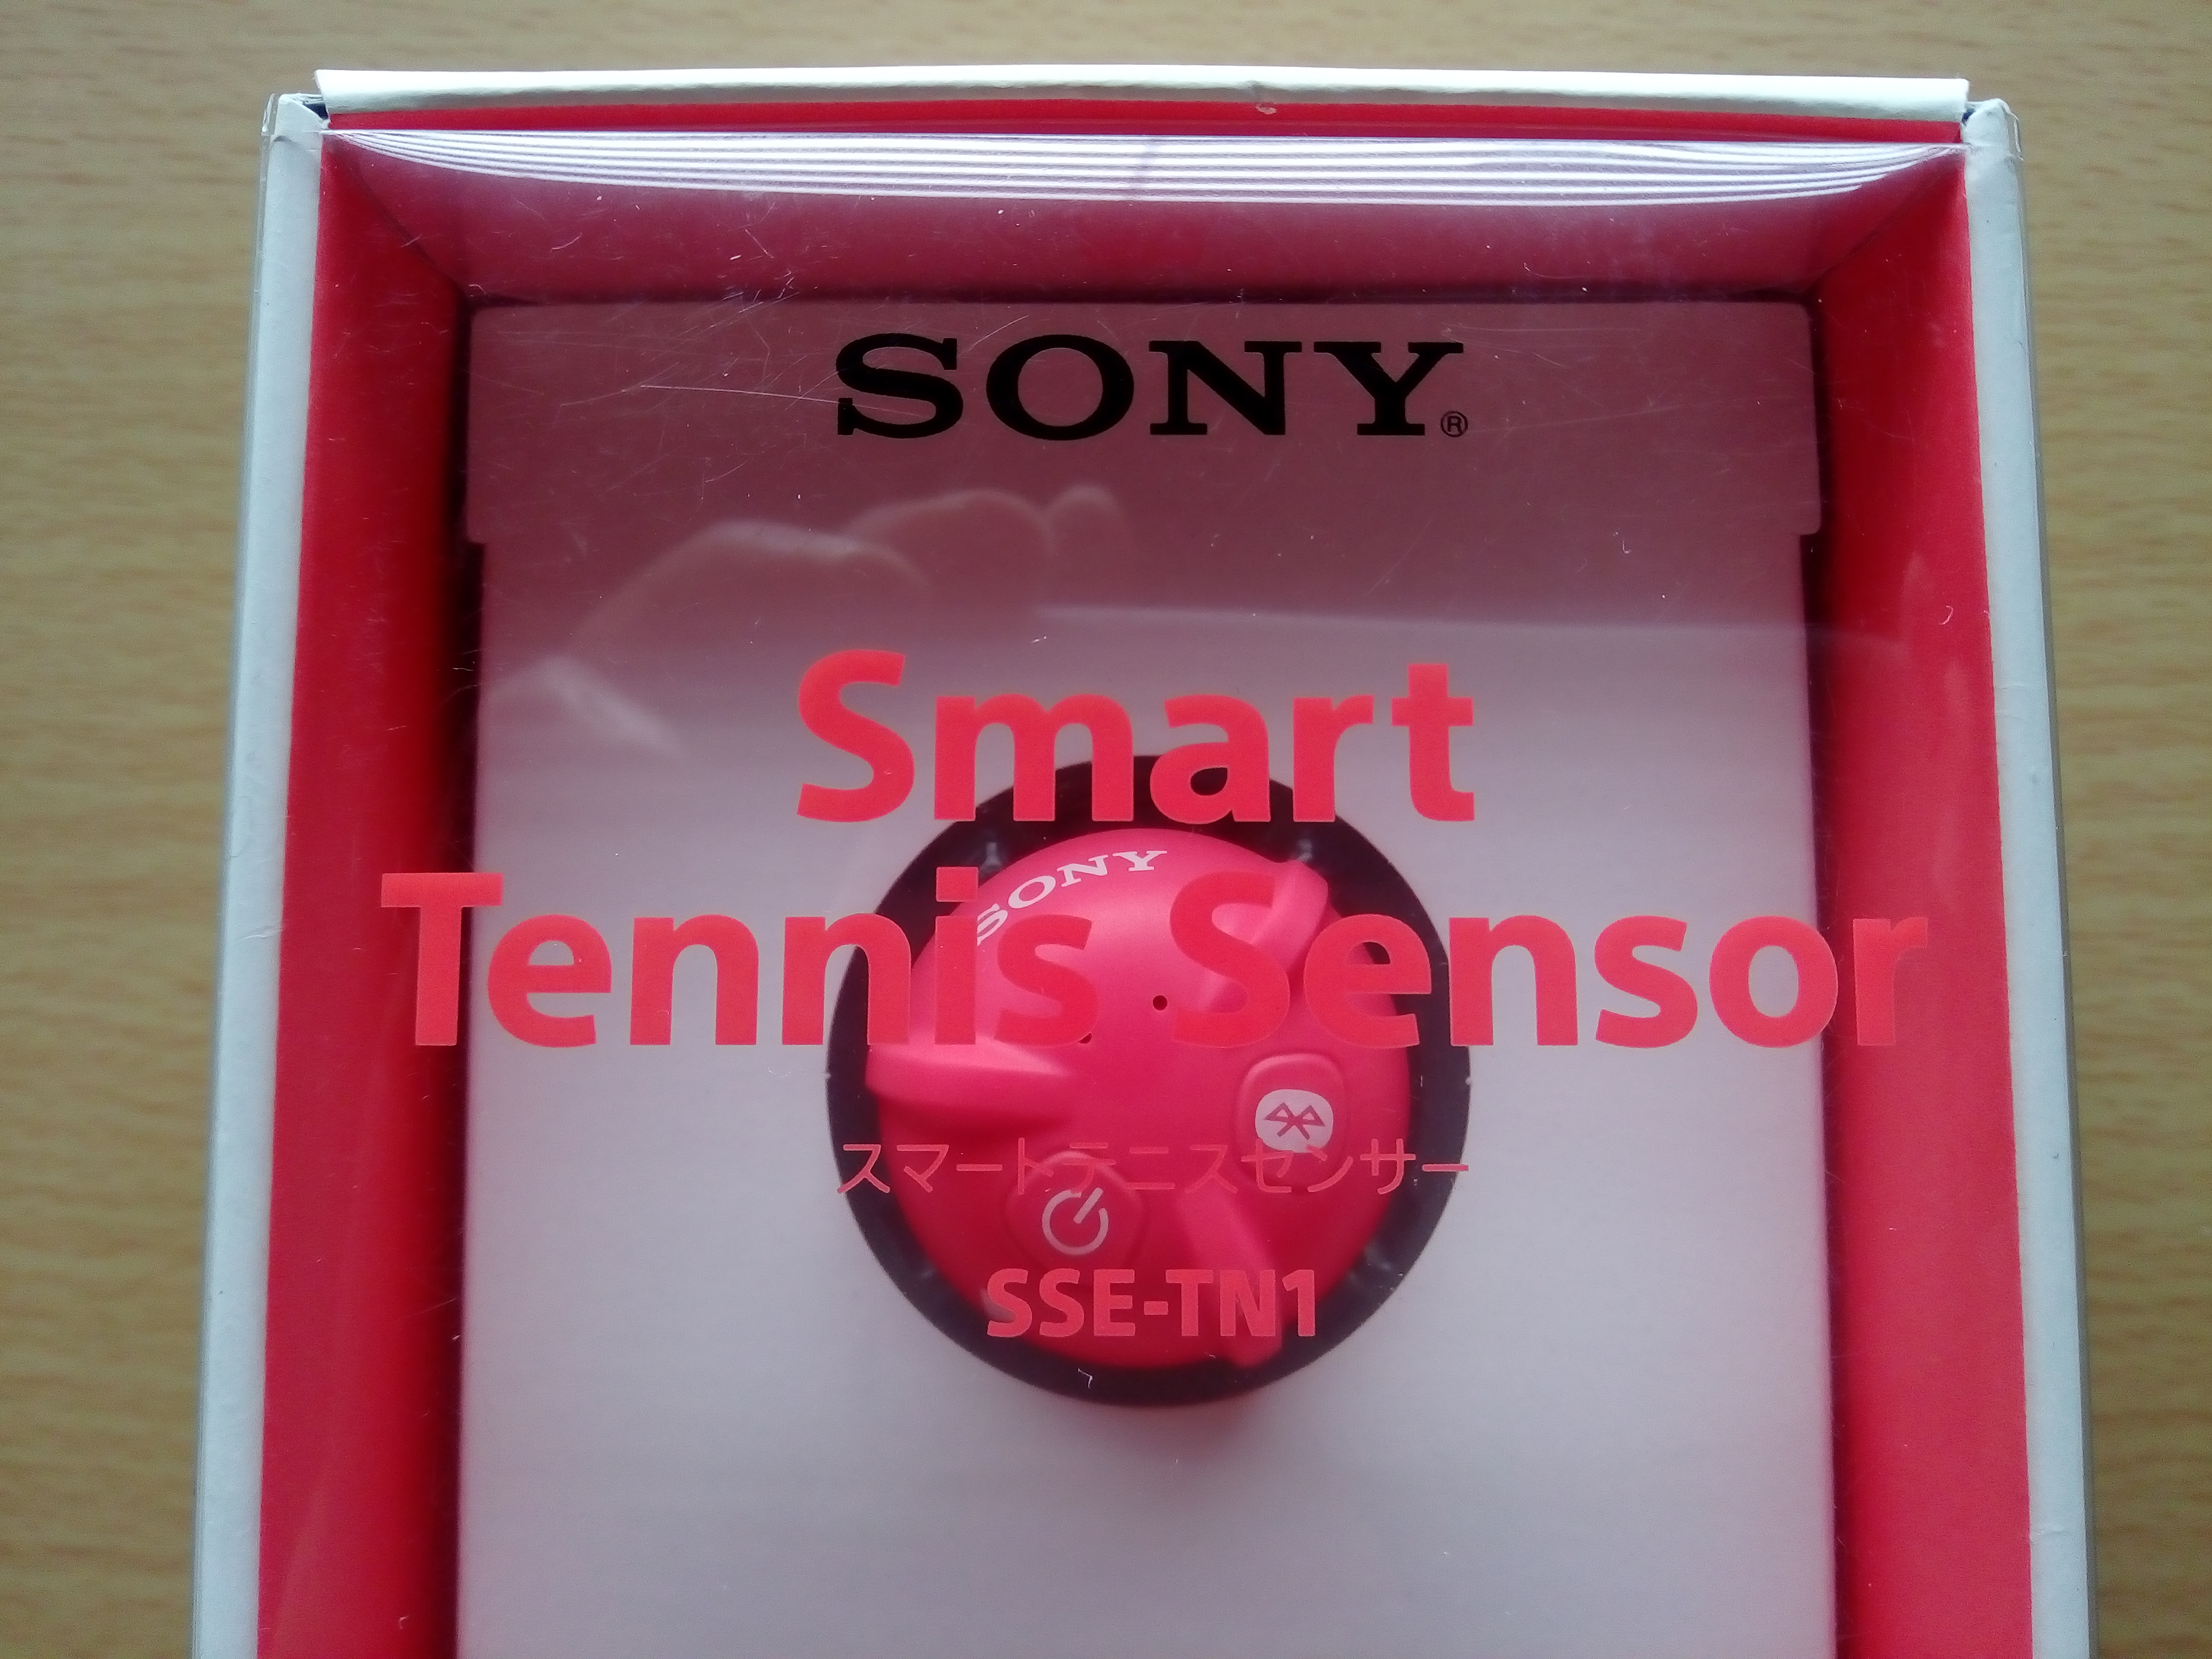 ソニー スマート テニス センサー Smart Tennis Sensor